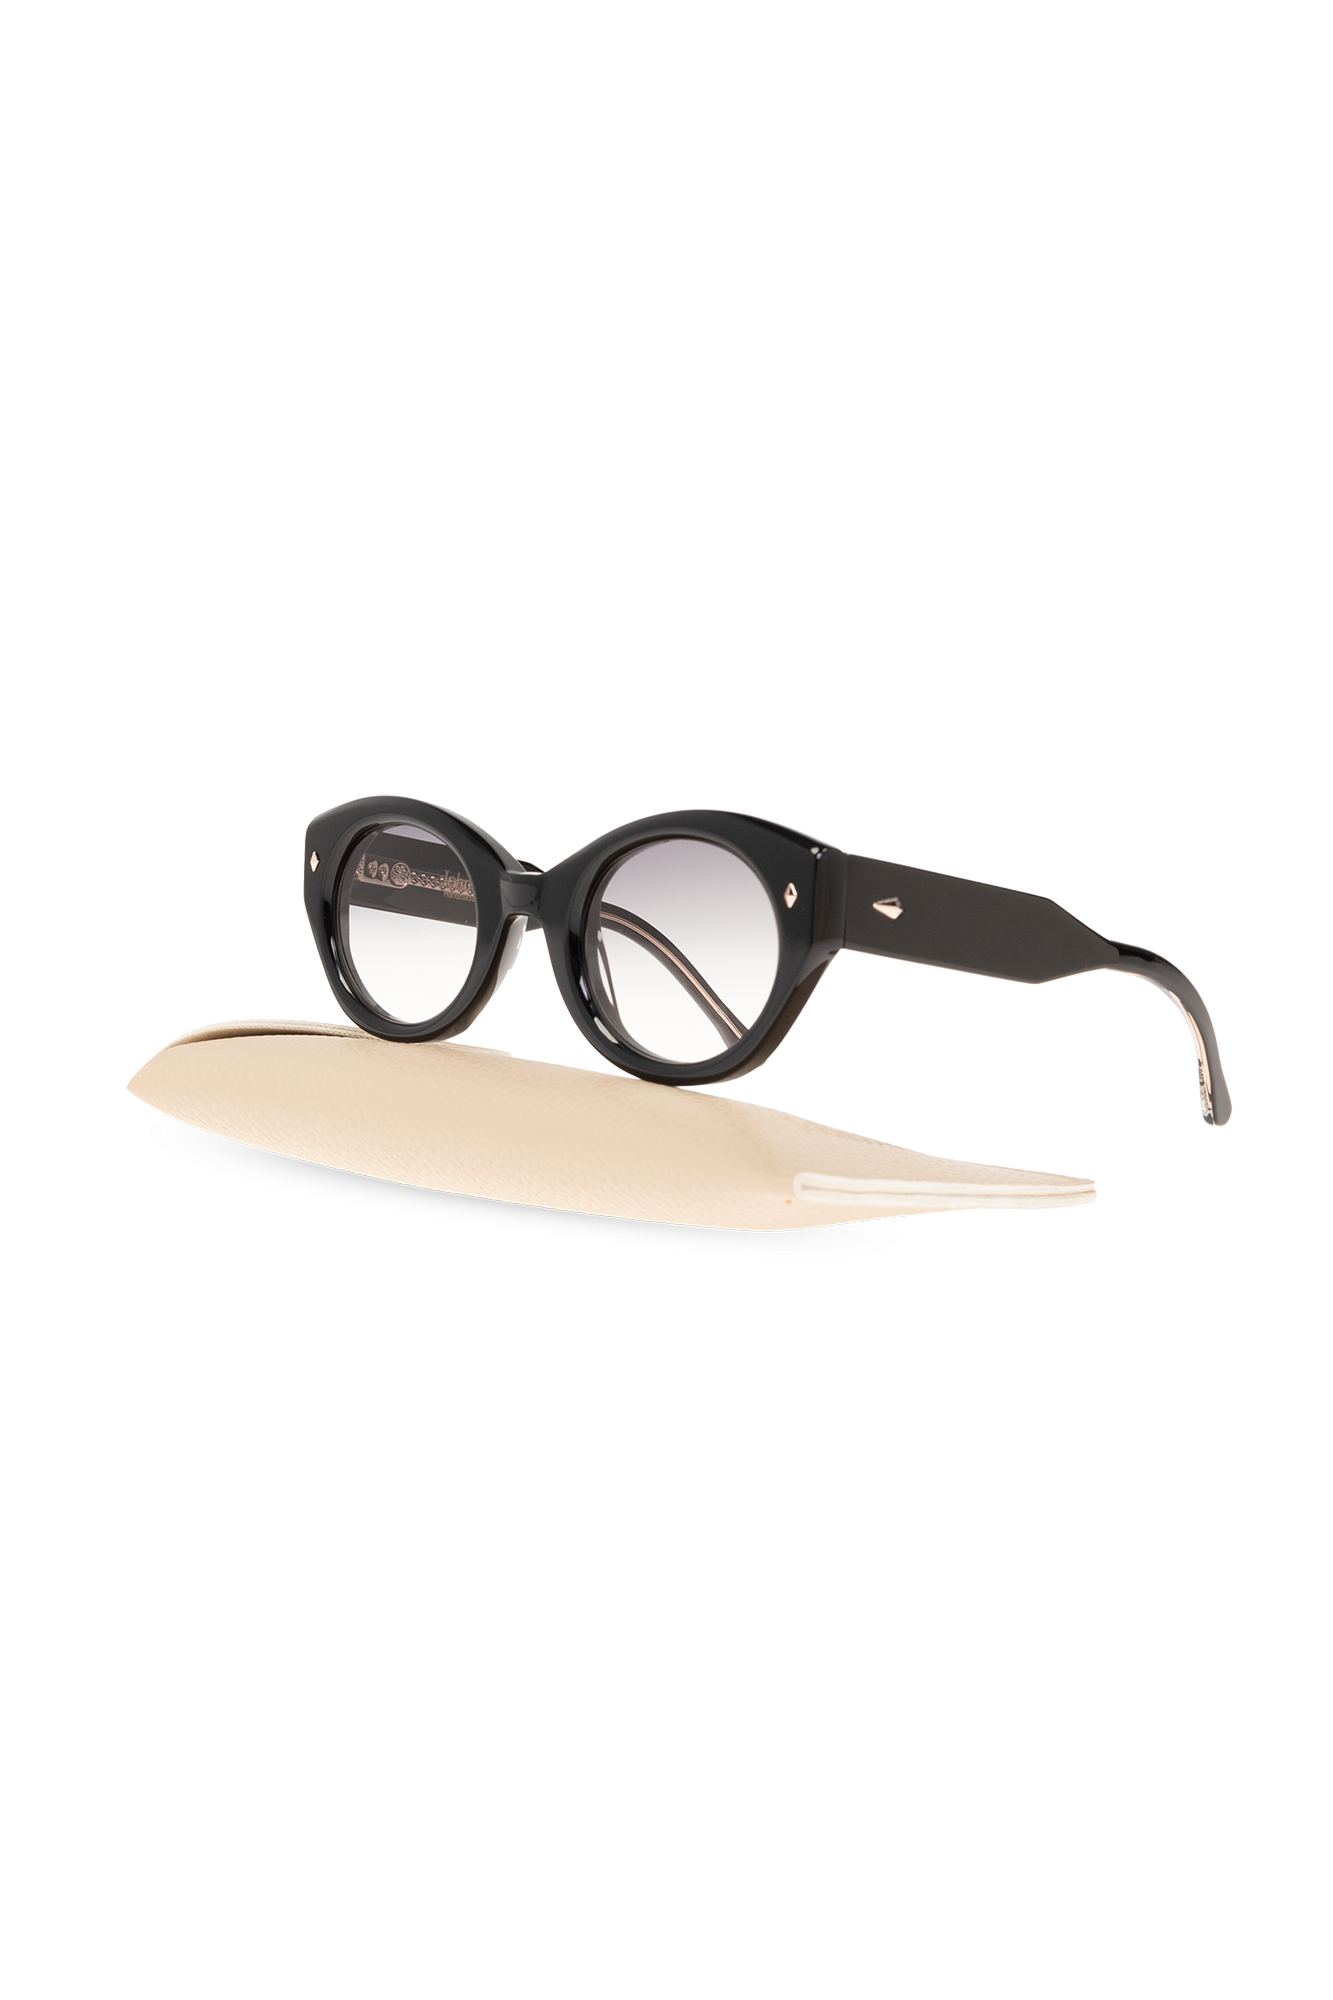 John Dalia 'Simone' sunglasses